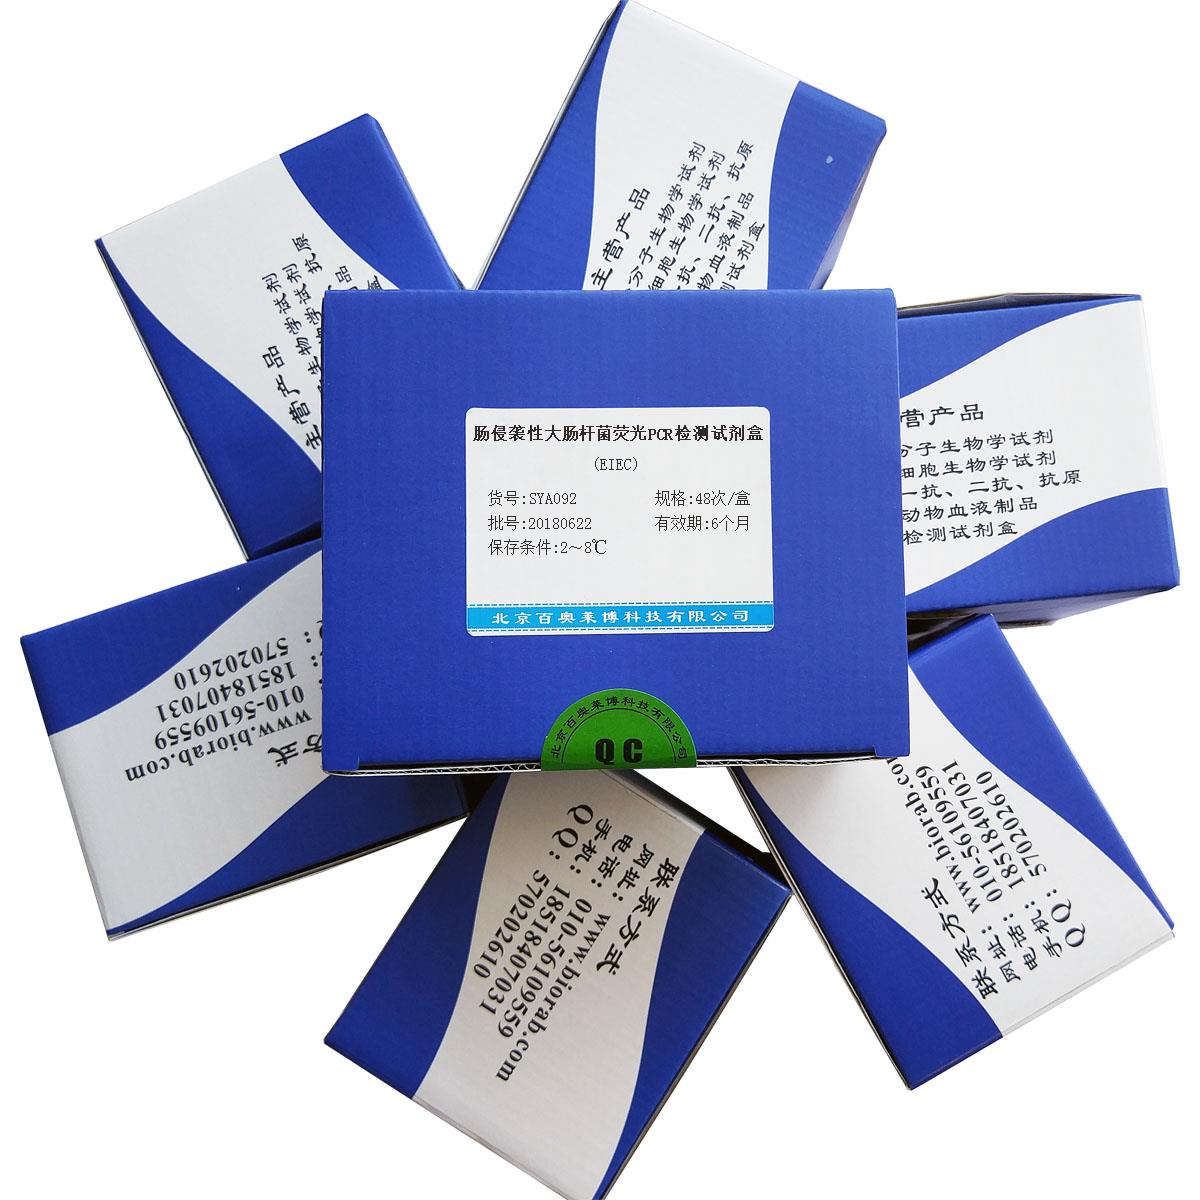 北京现货肠侵袭性大肠杆菌荧光PCR检测试剂盒(EIEC)特价促销